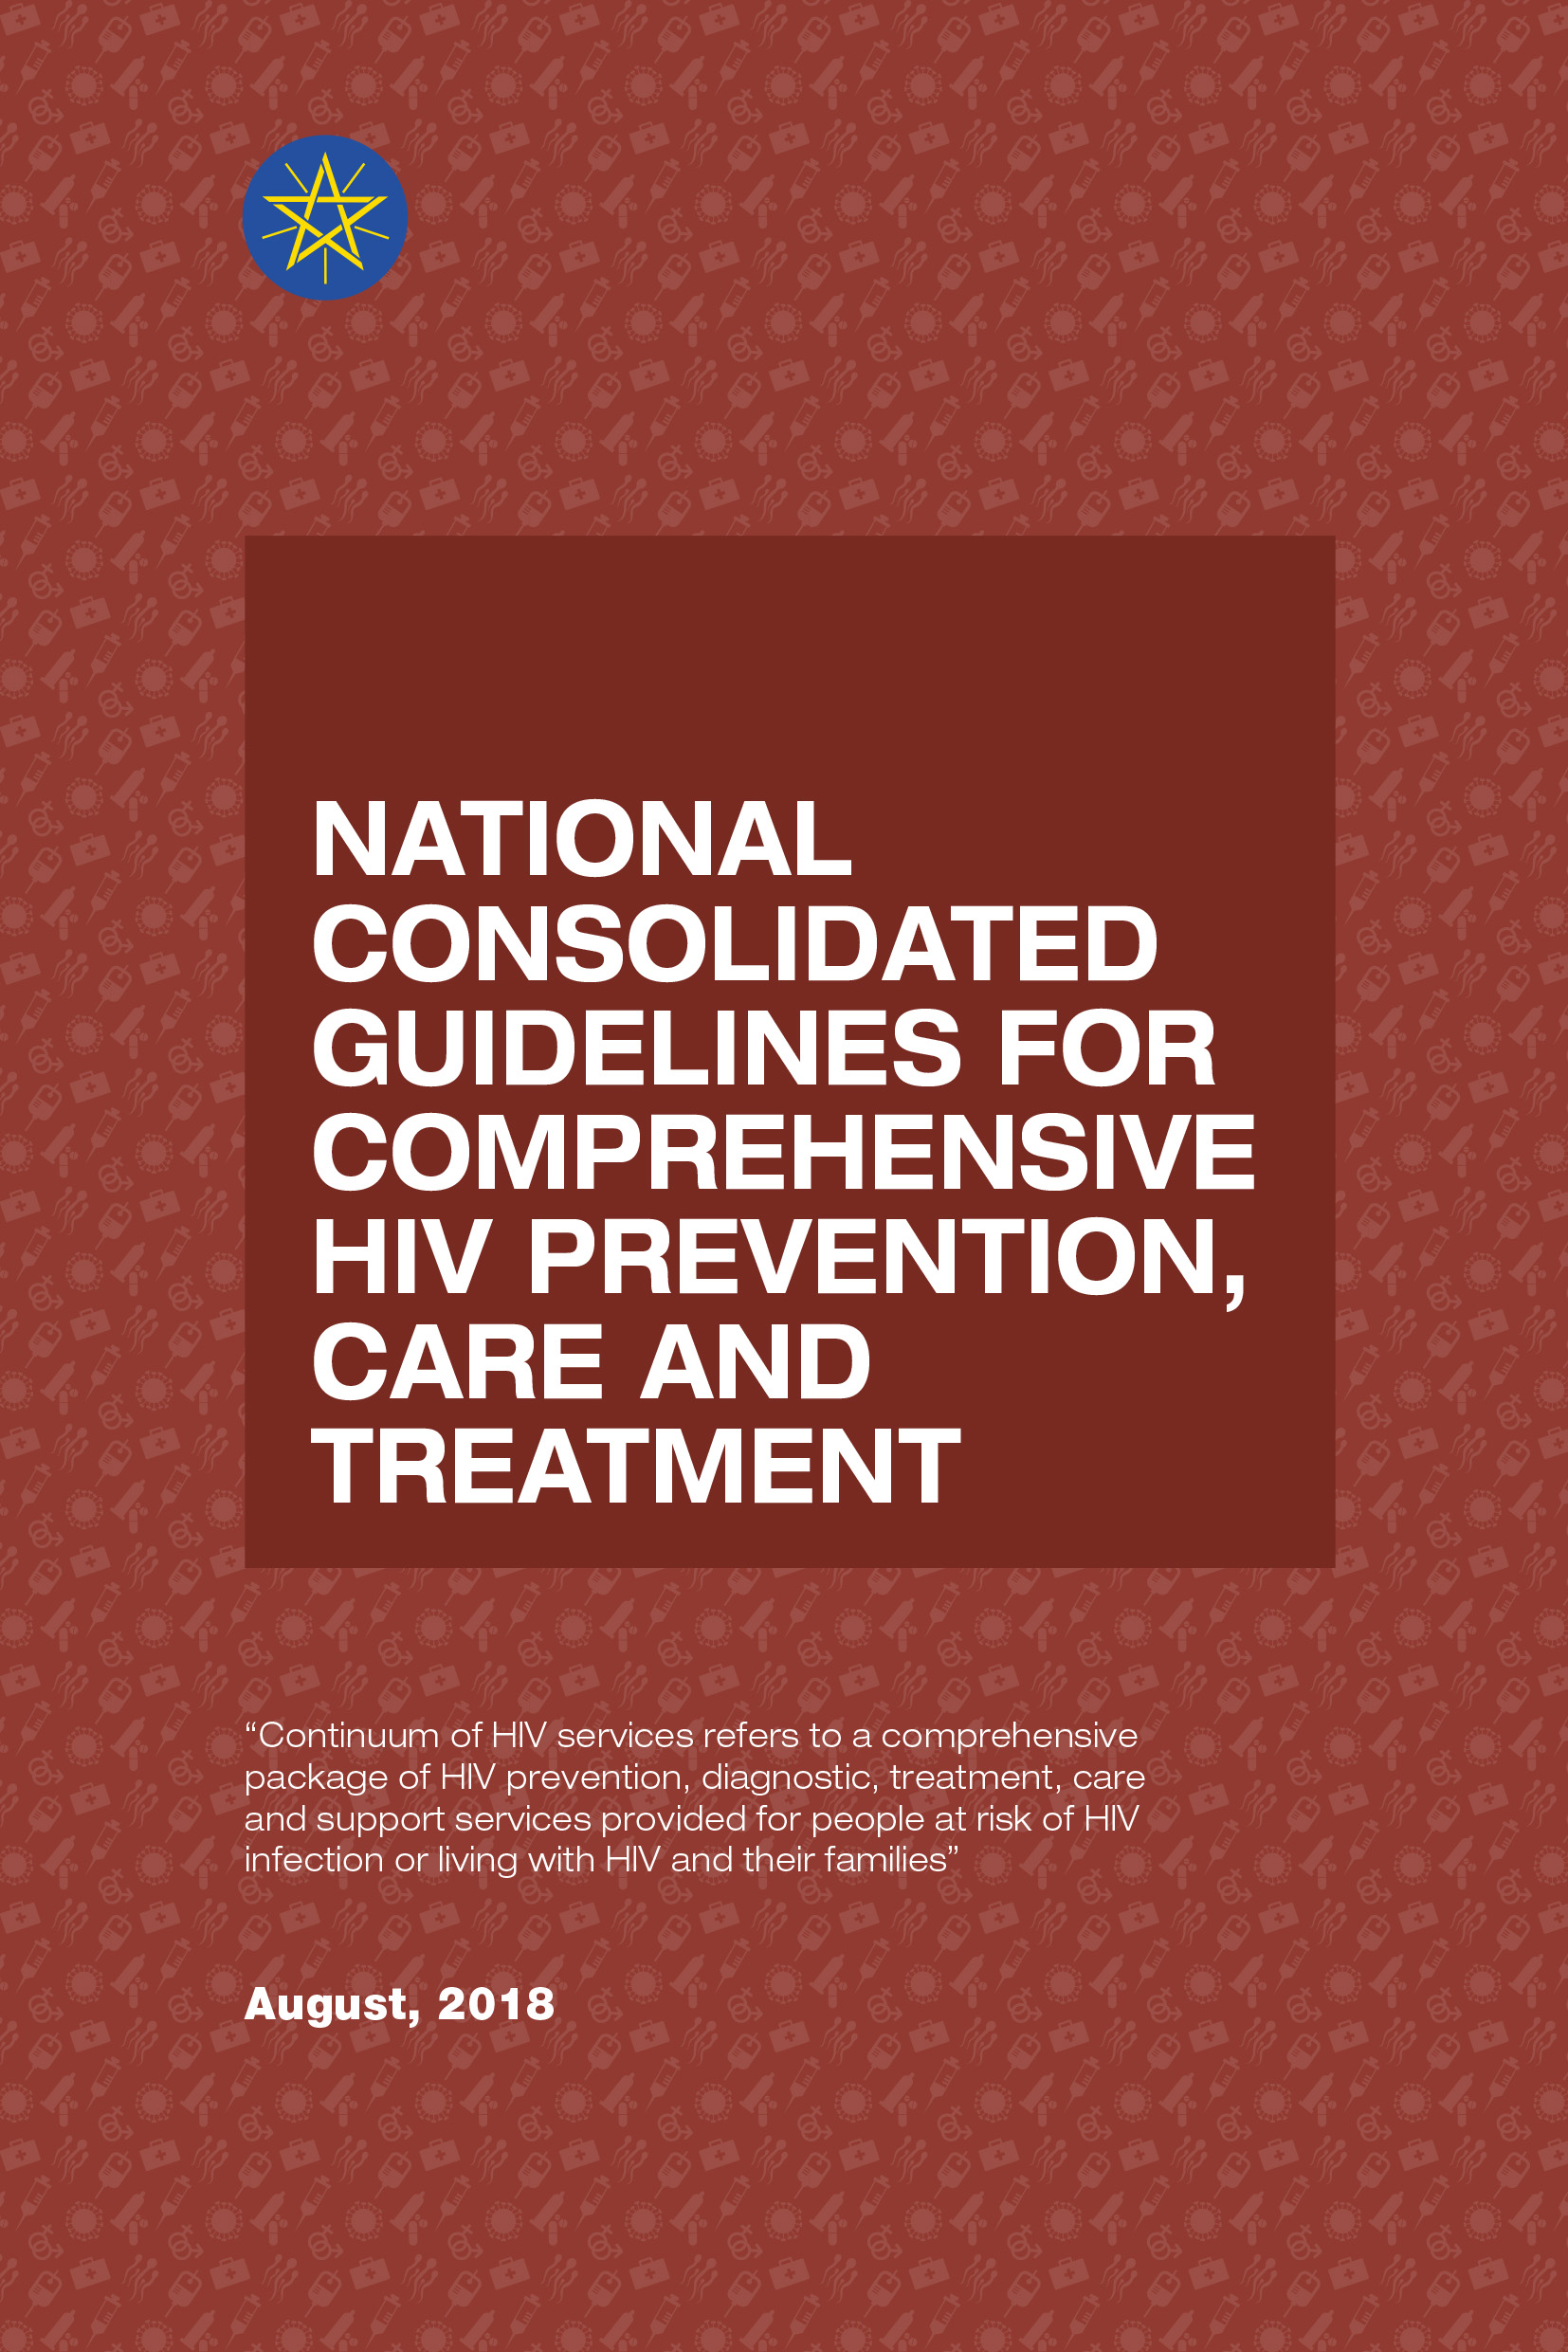 Lignes directrices nationales consolidées pour une prévention, des soins et un traitement complets du VIH 